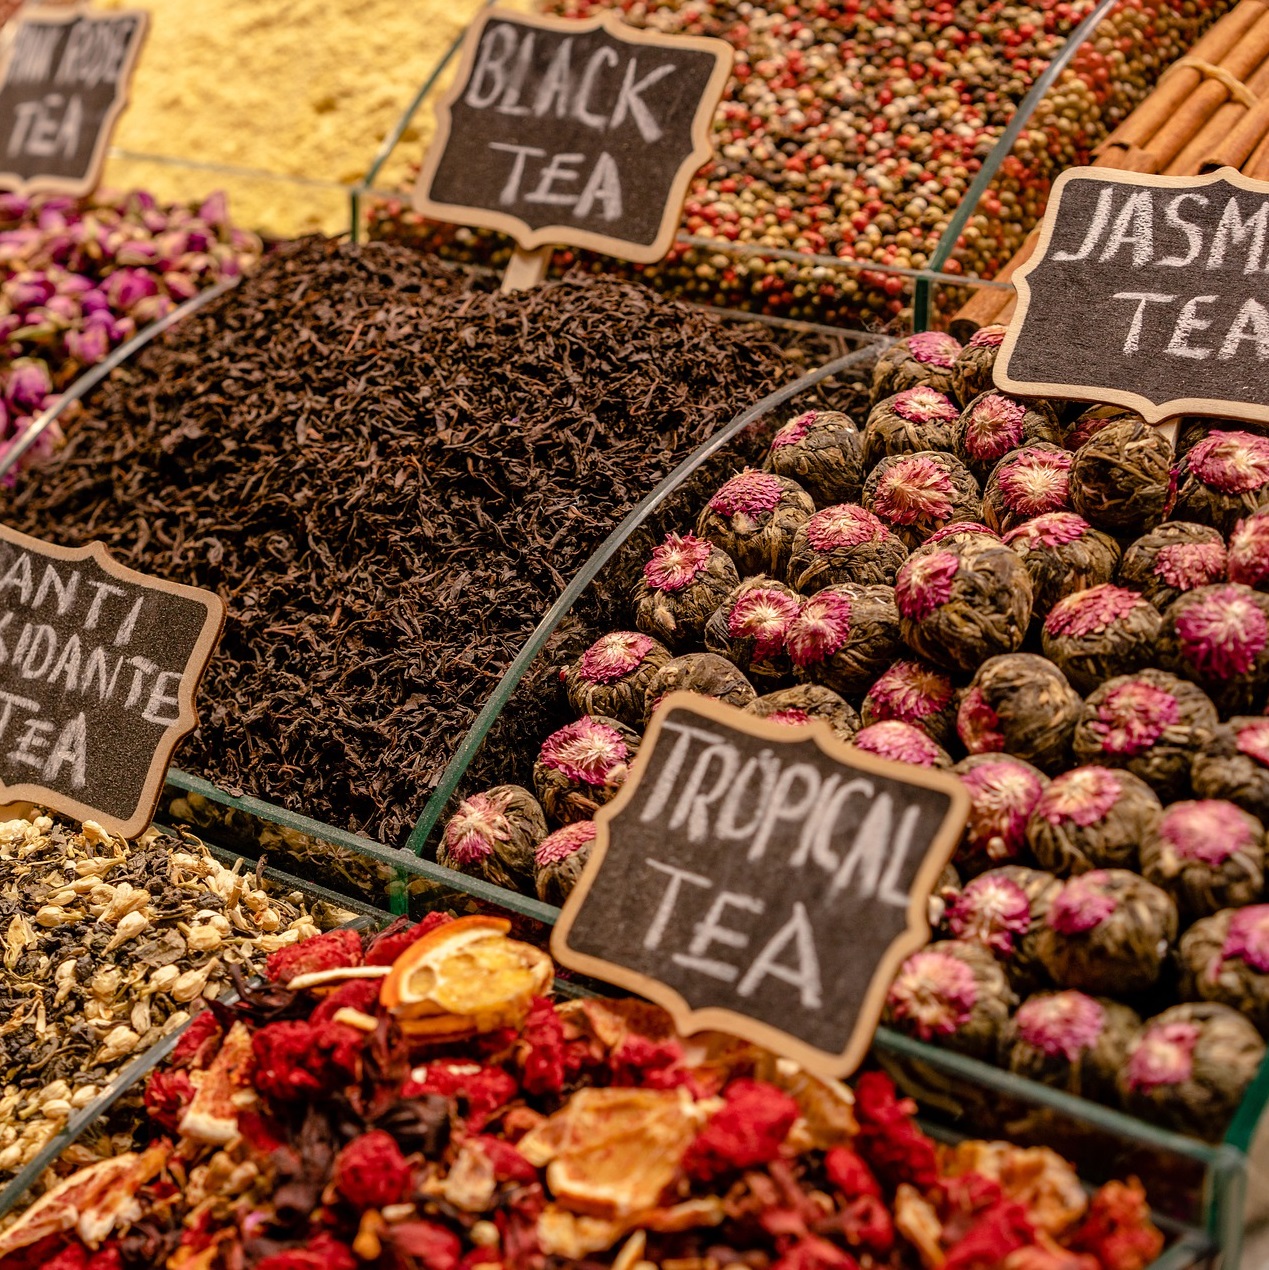 Thé et tisane sur les marchés bordelais